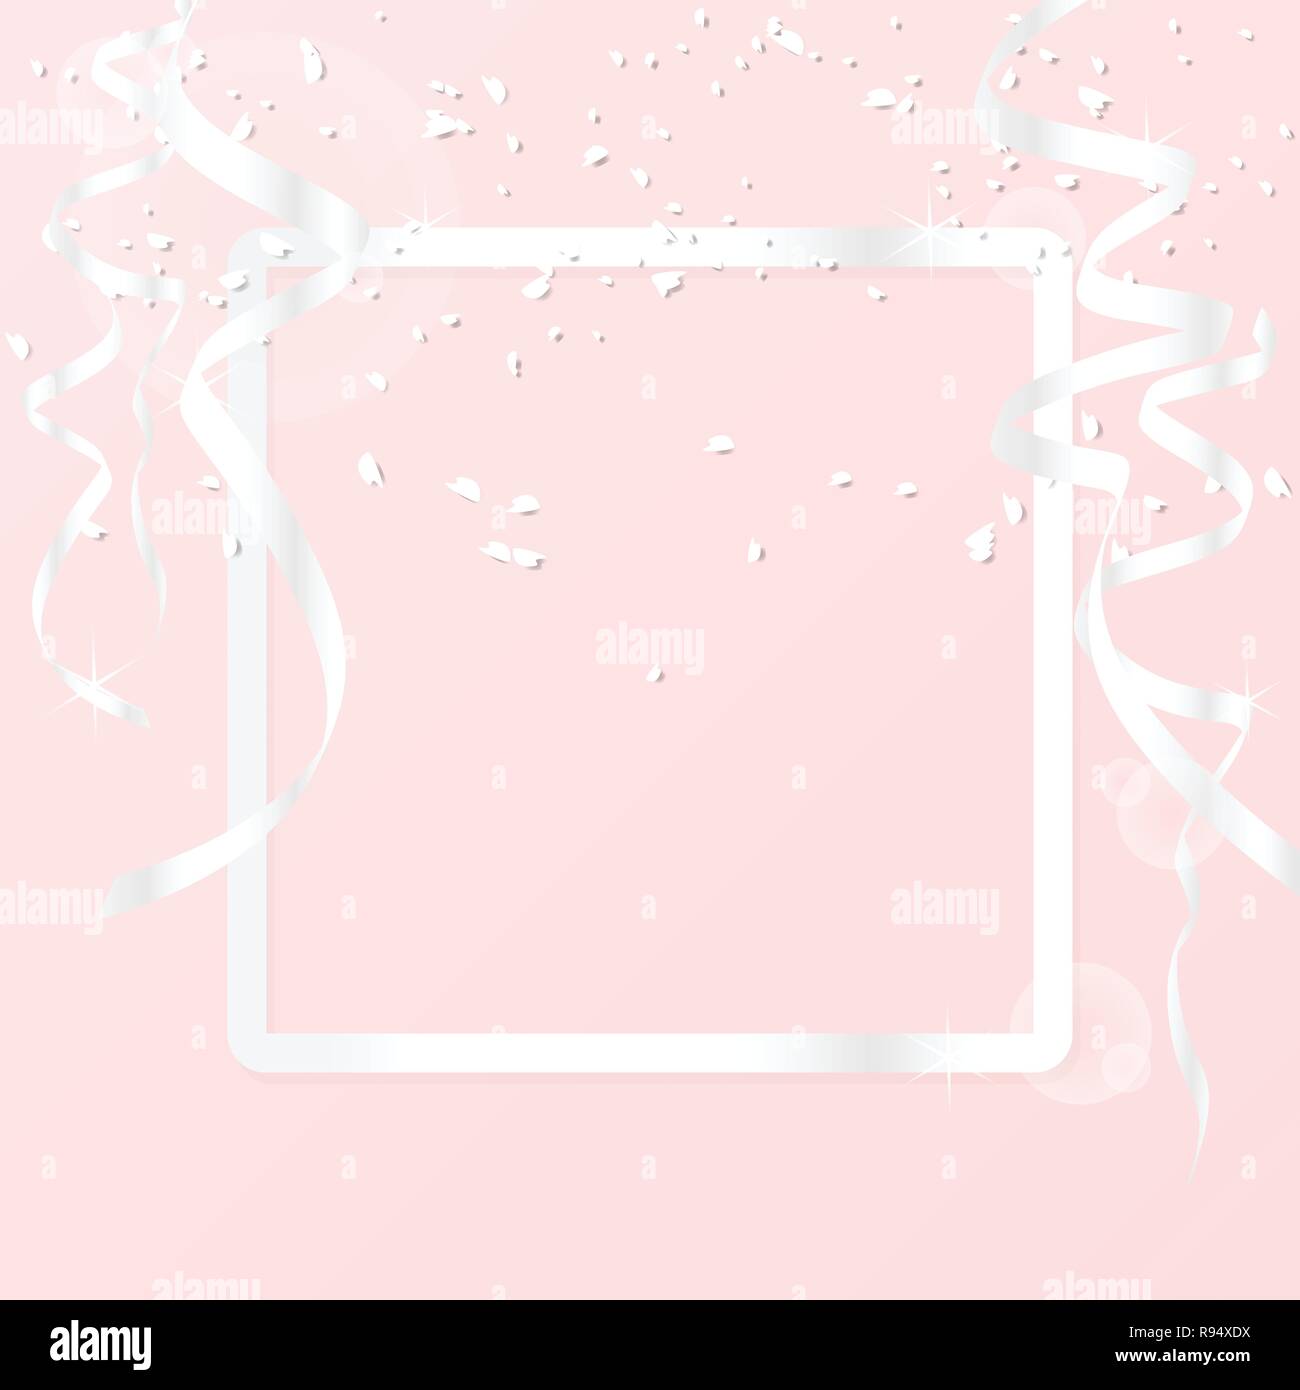 Grußkarte Hintergrund mit Luxus silber Rahmen Rahmen und Dekoration mit silber Farbband und Glitter auf rosa Hintergrund isoliert. Vektor illustratio Stock Vektor